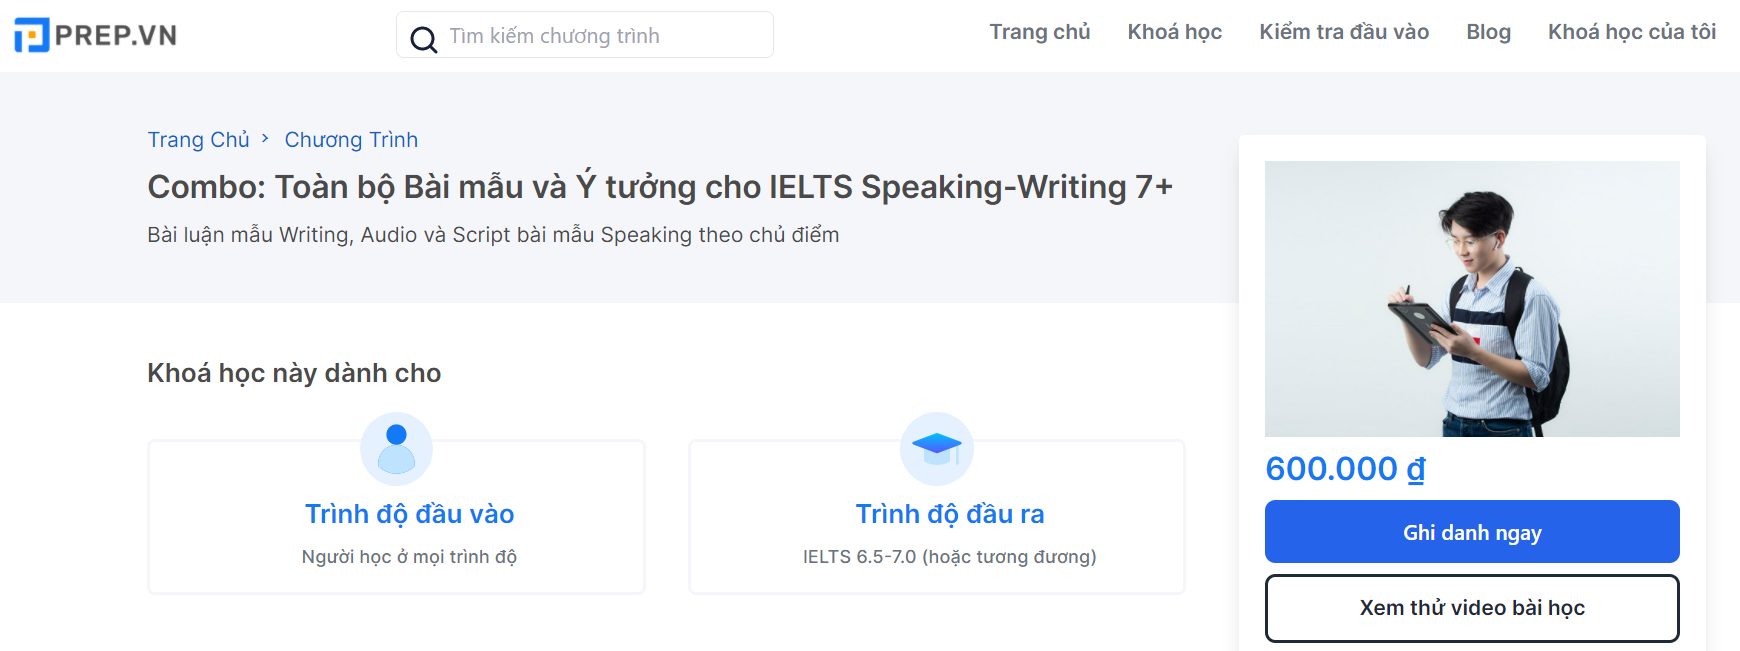 Combo toàn bài mẫu và ý tưởng cho IELTS Speaking - Writing 7+